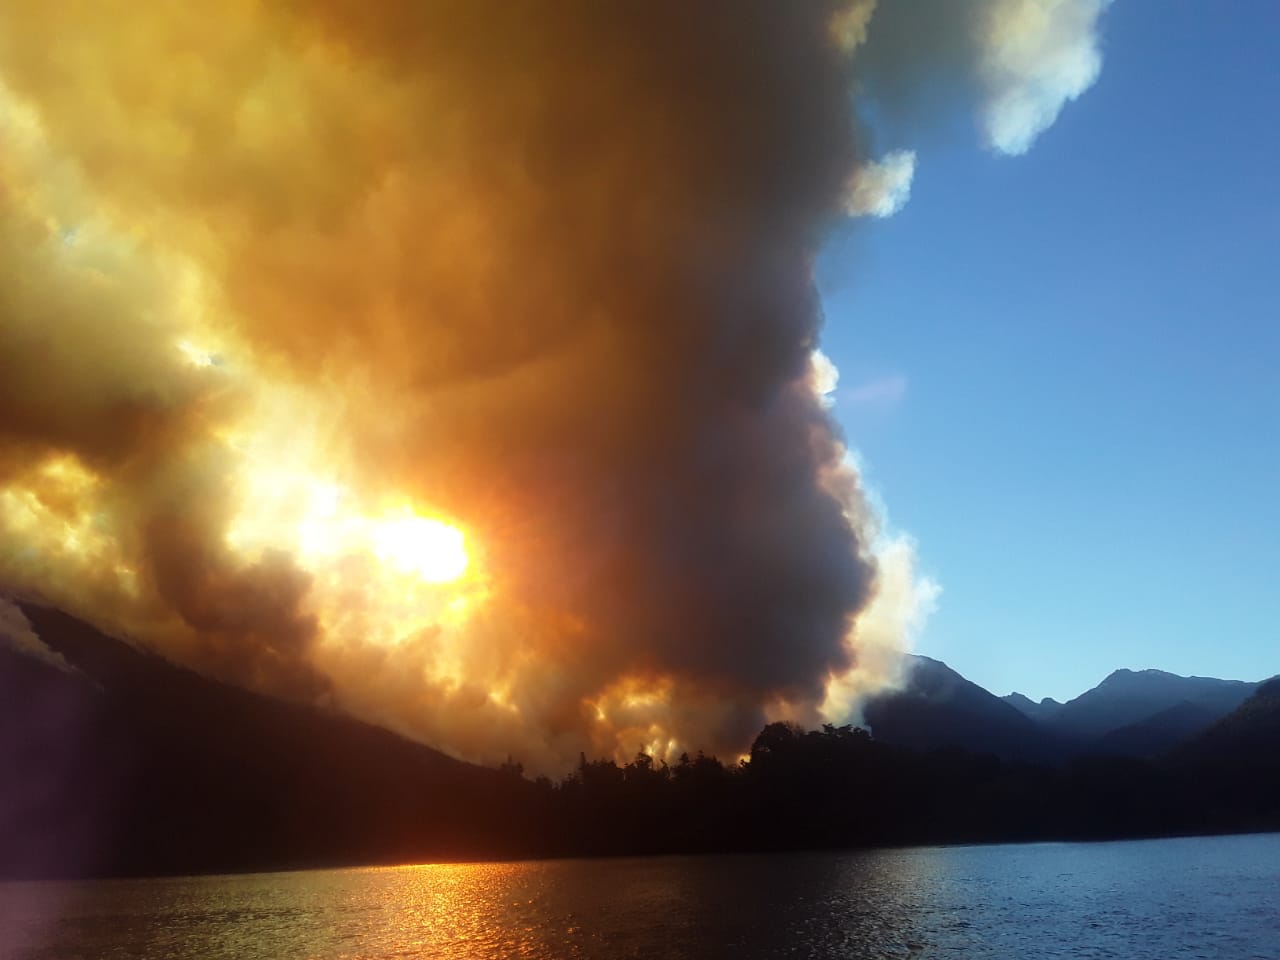 El incendio en Lago Martin, fuera de control. Foto: gentileza